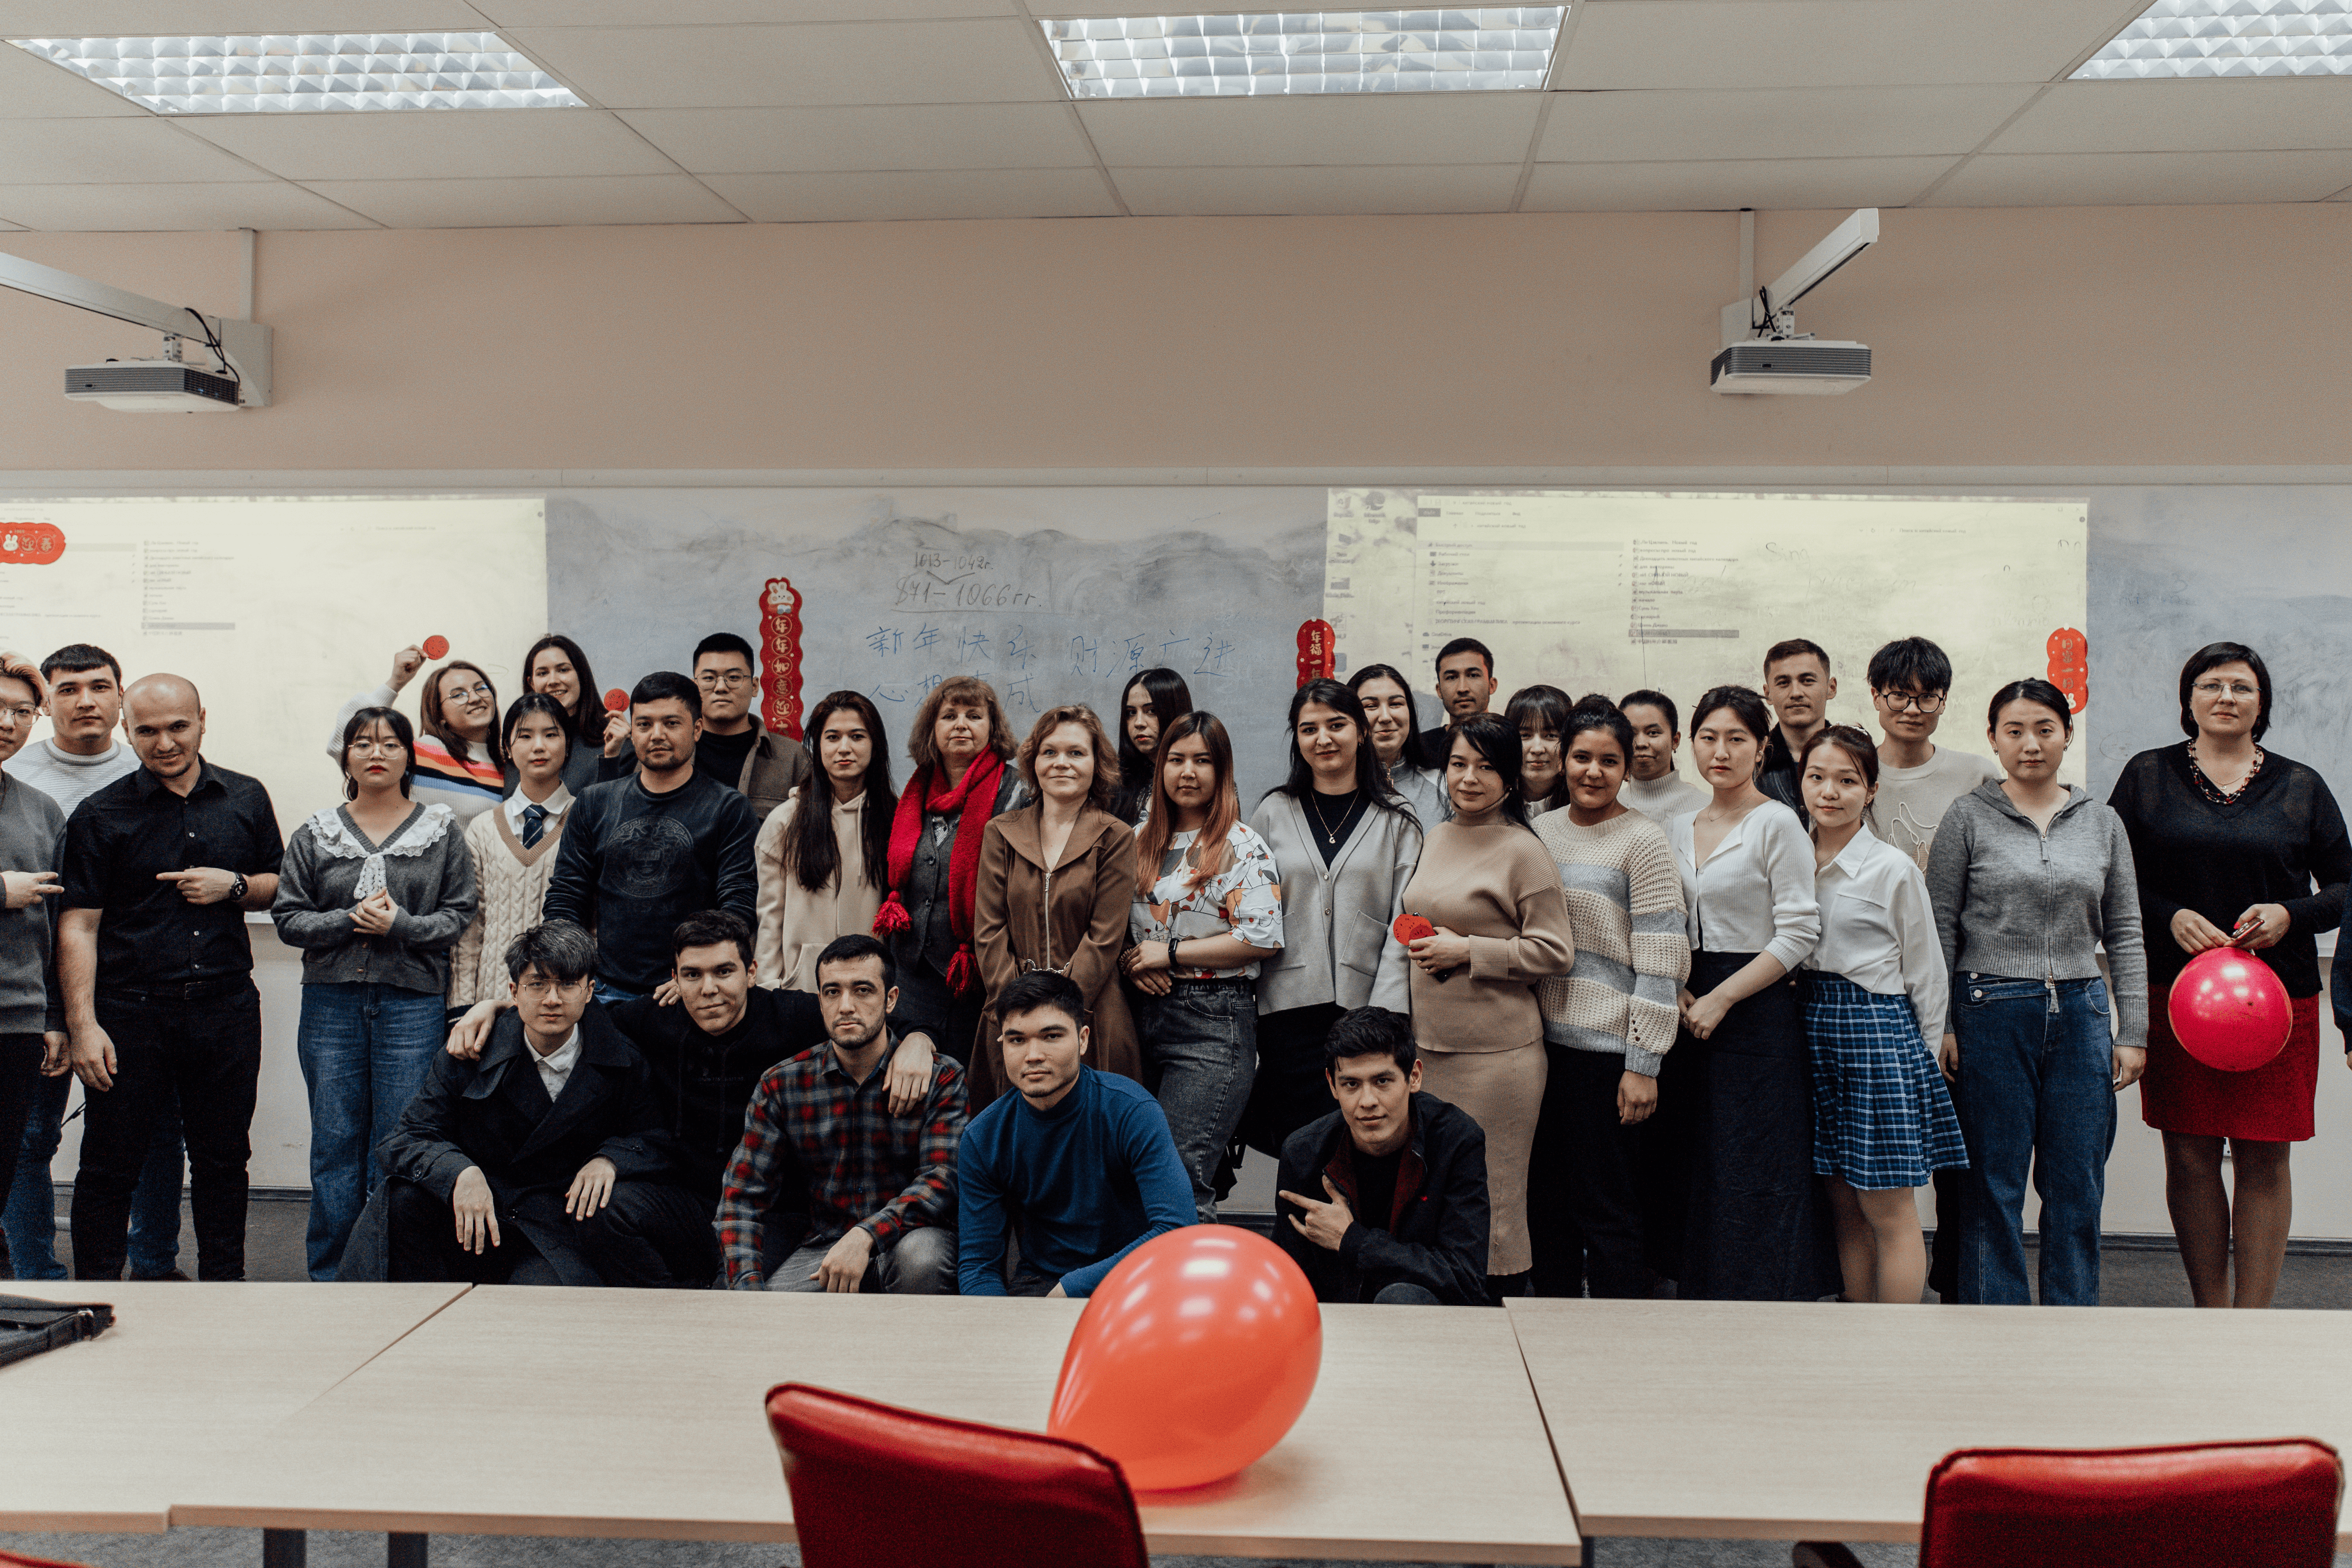 Как отмечают Китайский Новый год, рассказали иностранным студентам Мининского из Узбекистана и Туркменистана